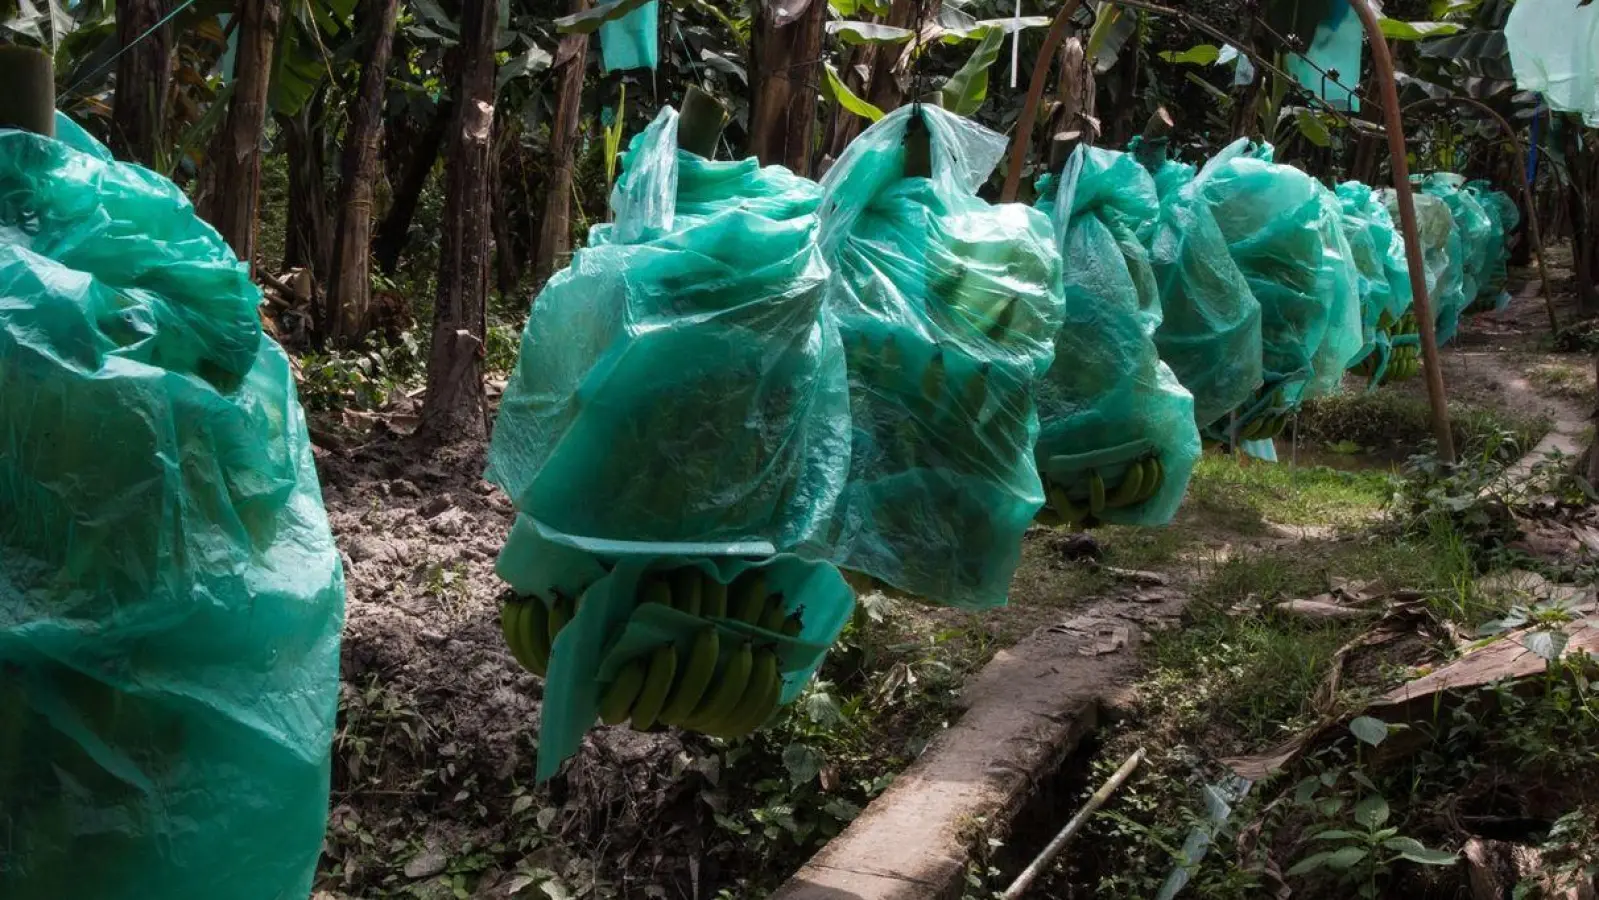 Bananen wachsen meist mit geringen Produktionskosten in Süd- und Mittelamerika, hier in Ecuador. Doch es gibt Probleme im Anbau. (Foto: David Diaz/dpa)